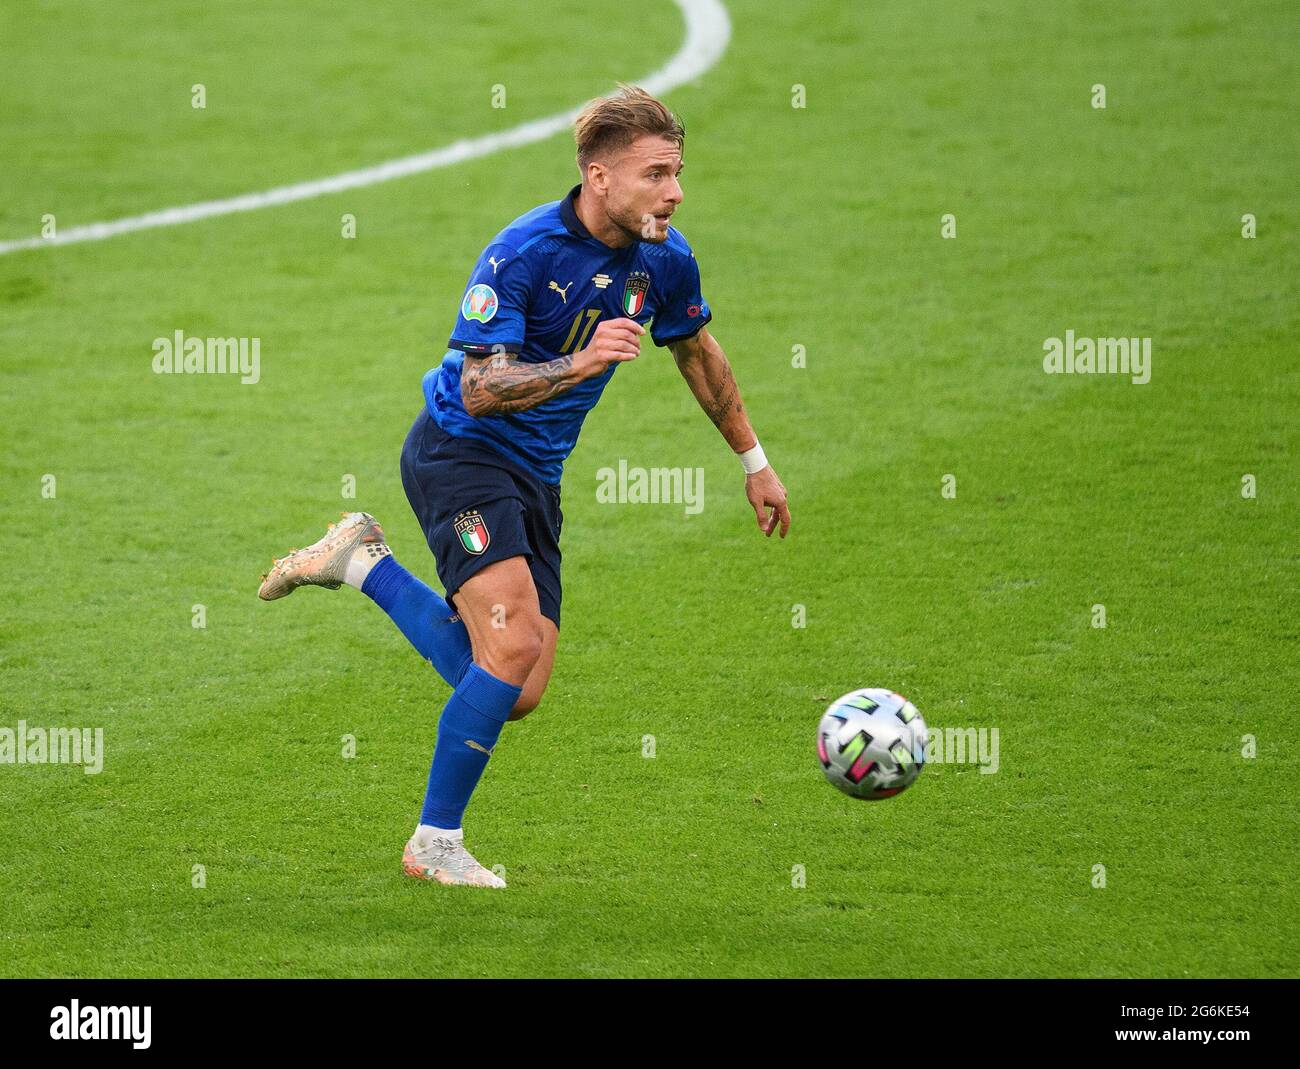 07 juillet 2021 - Italie / Espagne - UEFA Euro 2020 semi-finale - Wembley - Londres Ciro immobile crédit photo : © Mark pain / Alamy Live News Banque D'Images